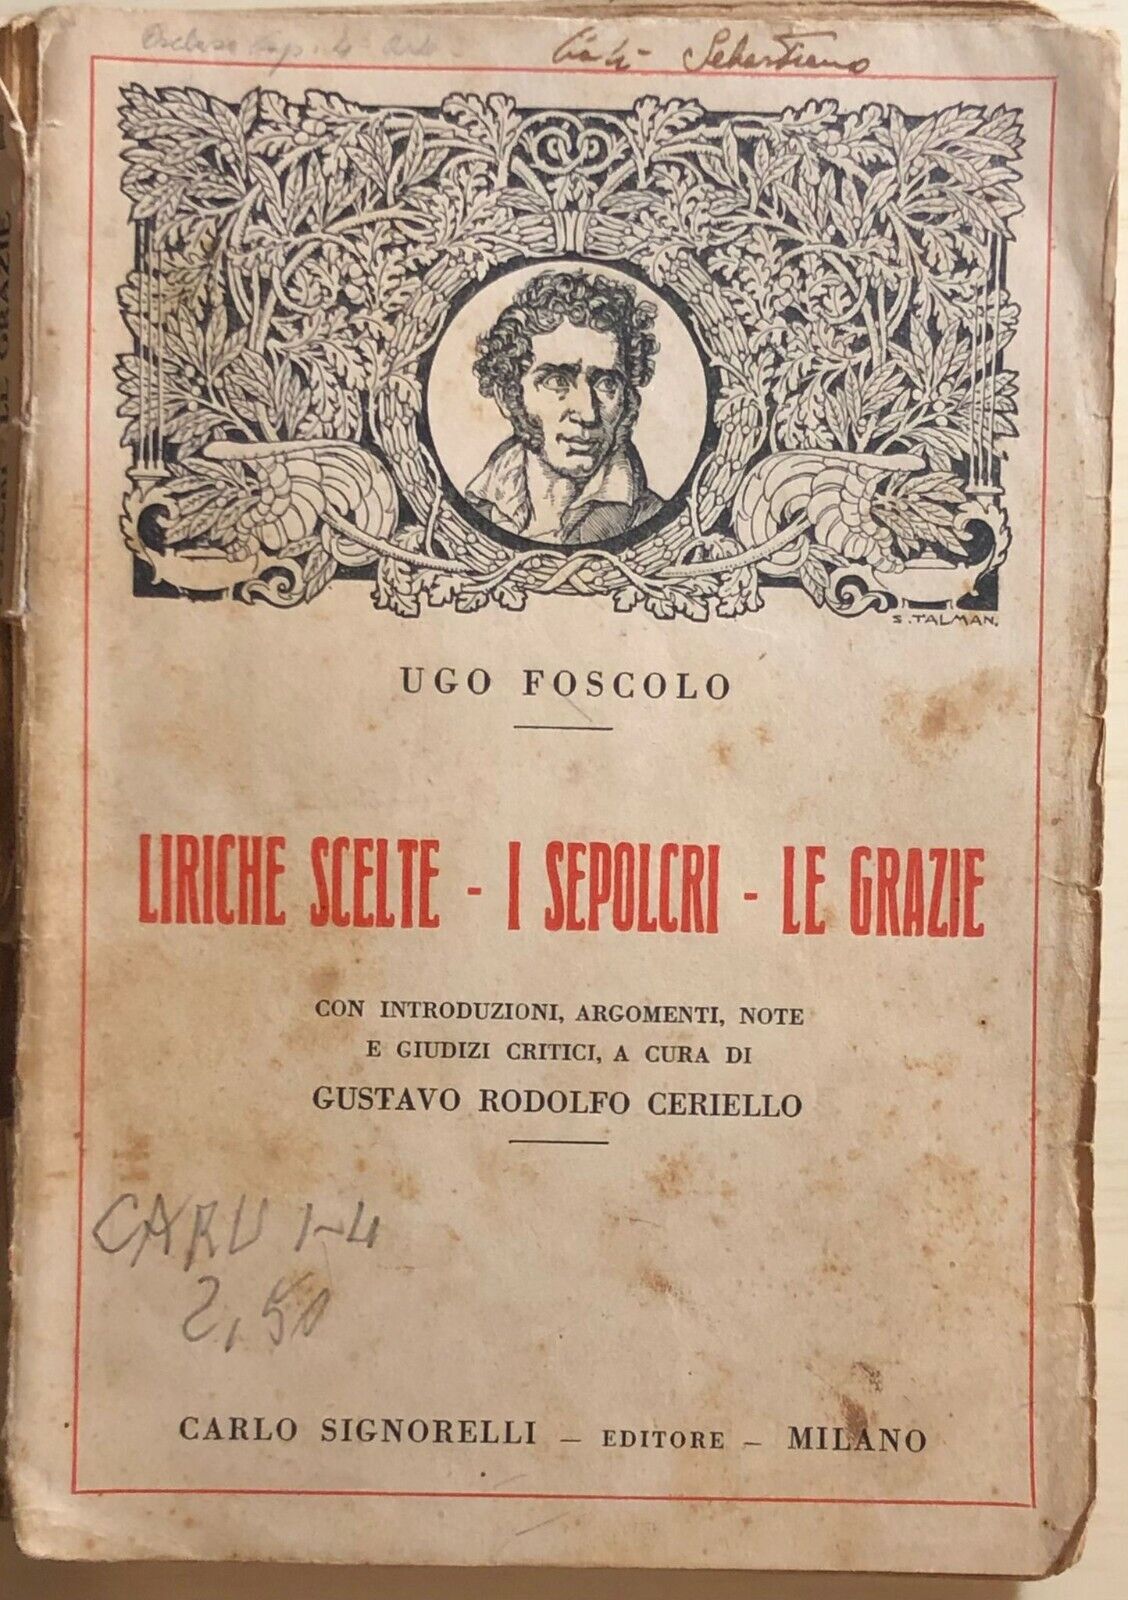 Liriche scelte - I sepolcri - Le Grazie di Ugo Foscolo, 1926, Carlo Signorelli E